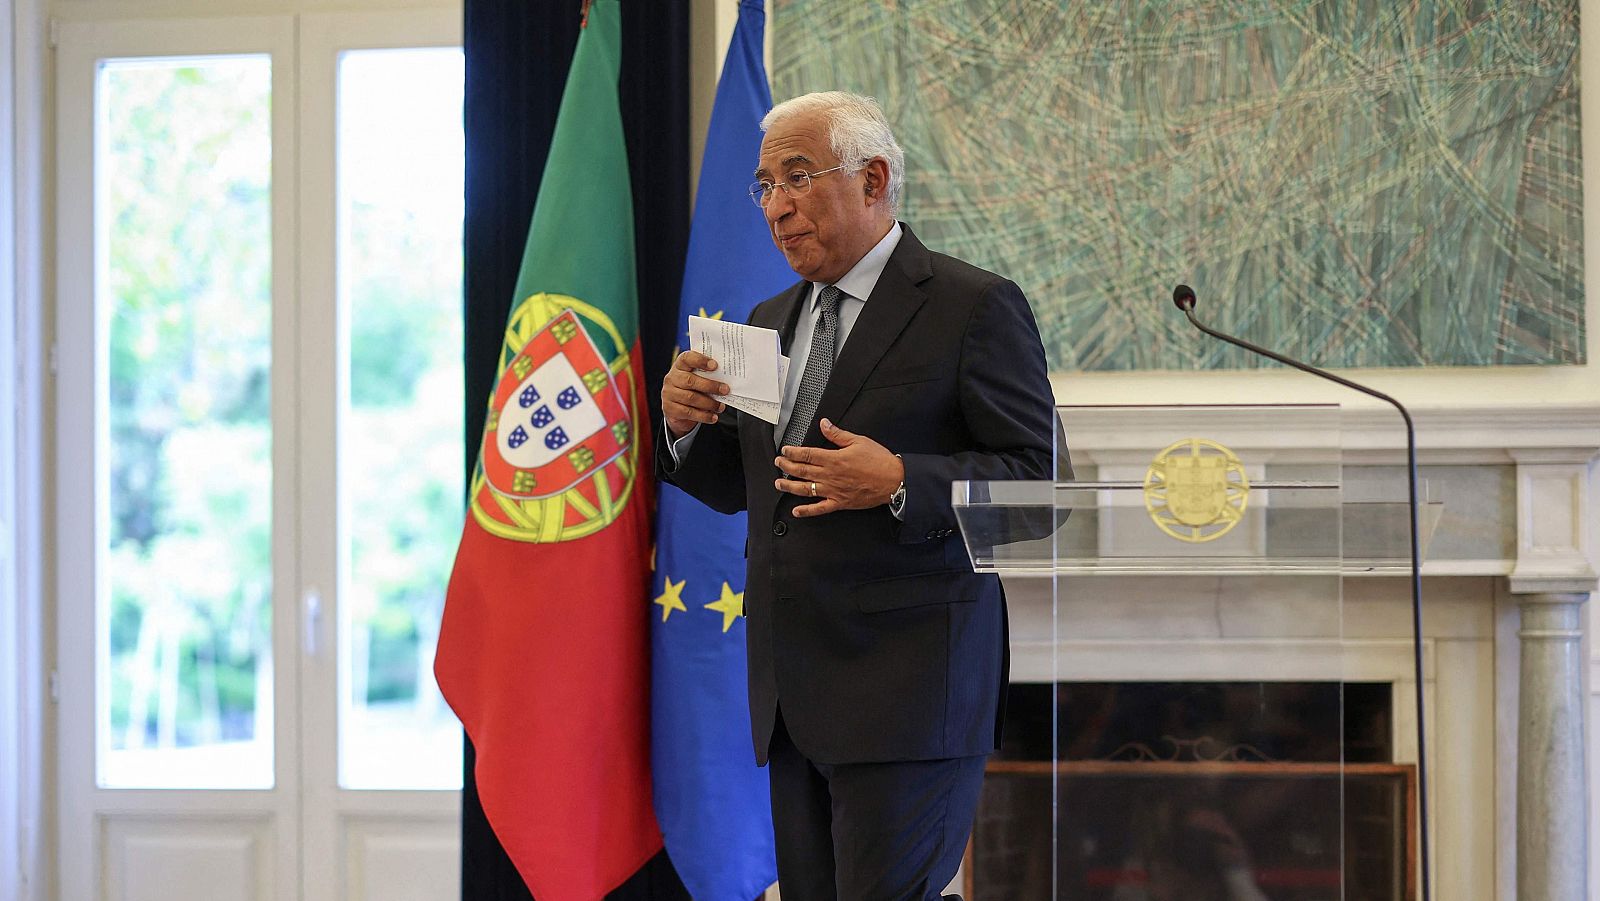 El presidente de Portugal anuncia un adelanto electoral para el 10 de marzo tras la dimisión de Costa